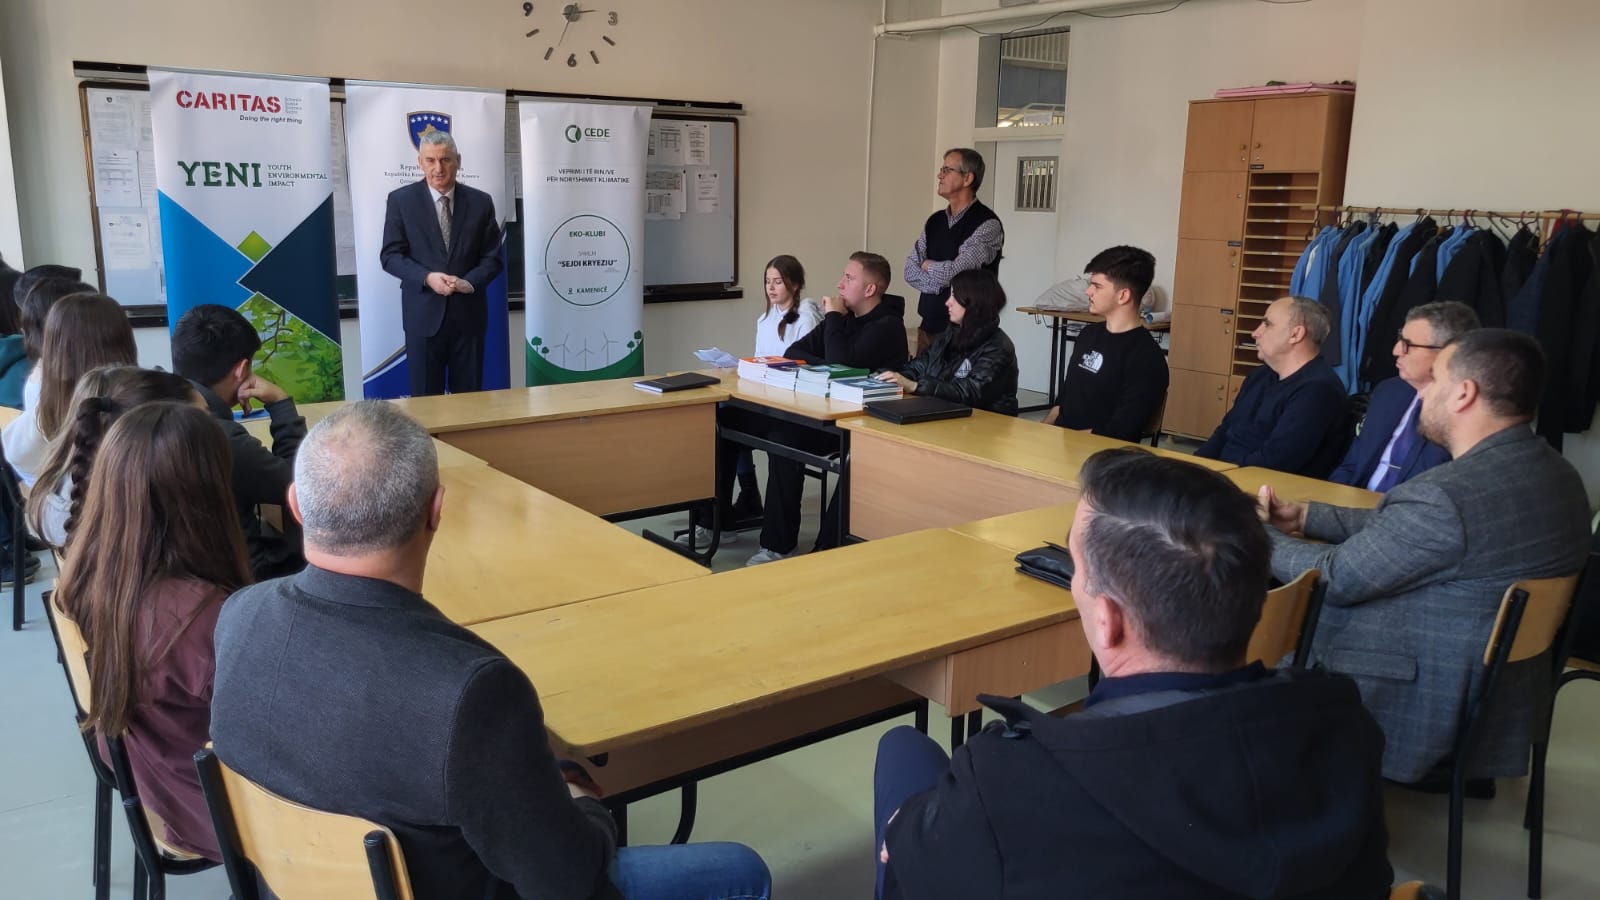 Ministria e Zhvillimit Rajonal (MZHR) në bashkëpunim me Caritasin Zviceran realizuan Inaugurimin e projektit Mjedisor të Shkollës së Mesme “Sejdi Kryeziu” në fshatin Rogoqicë - Kamenicë